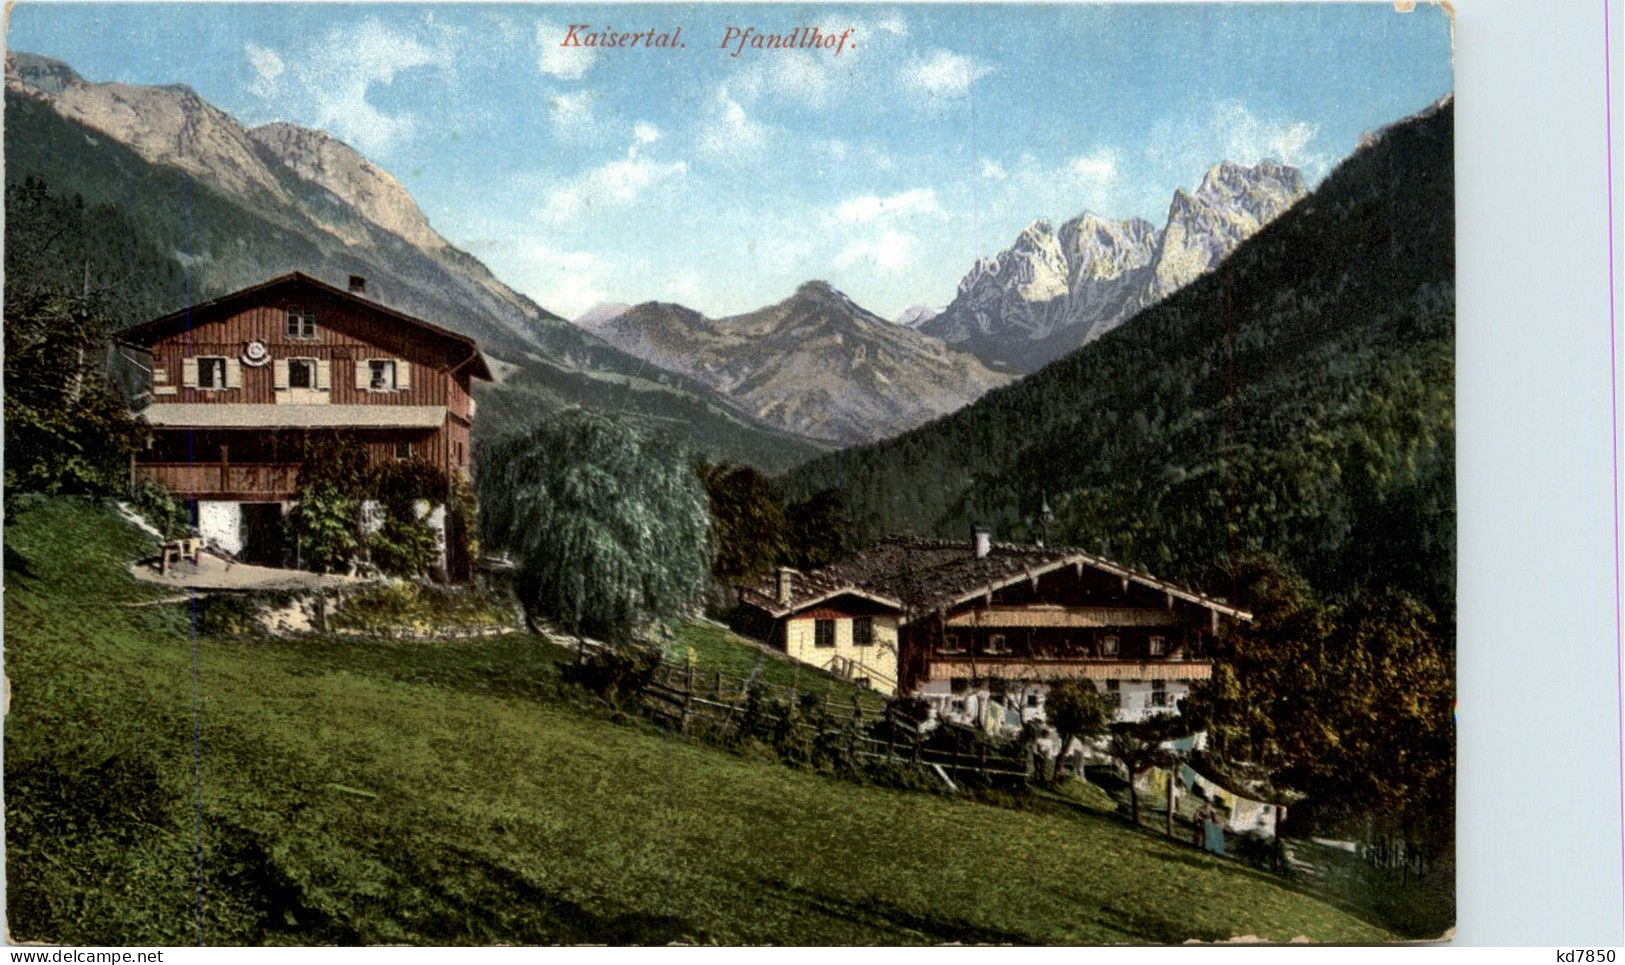 Kufstein/Tirol Und Rundherum - Kaisertal, Pfandlhof - Kufstein